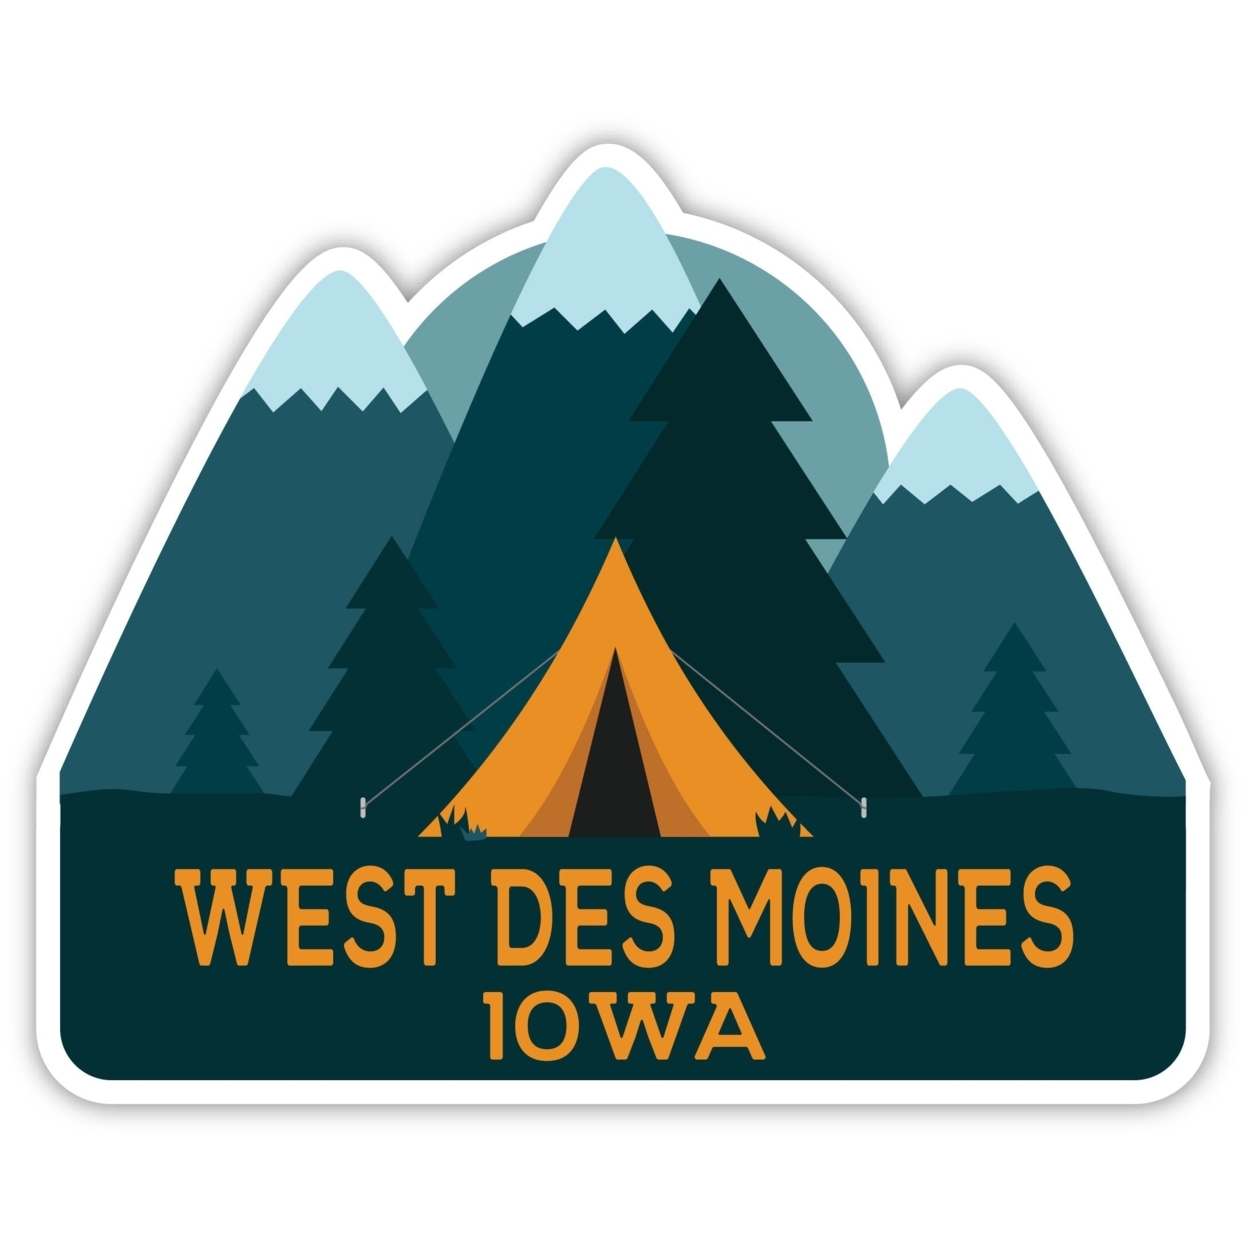 West Des Moines Iowa Souvenir Decorative Stickers (Choose Theme And Size) - Single Unit, 4-Inch, Tent